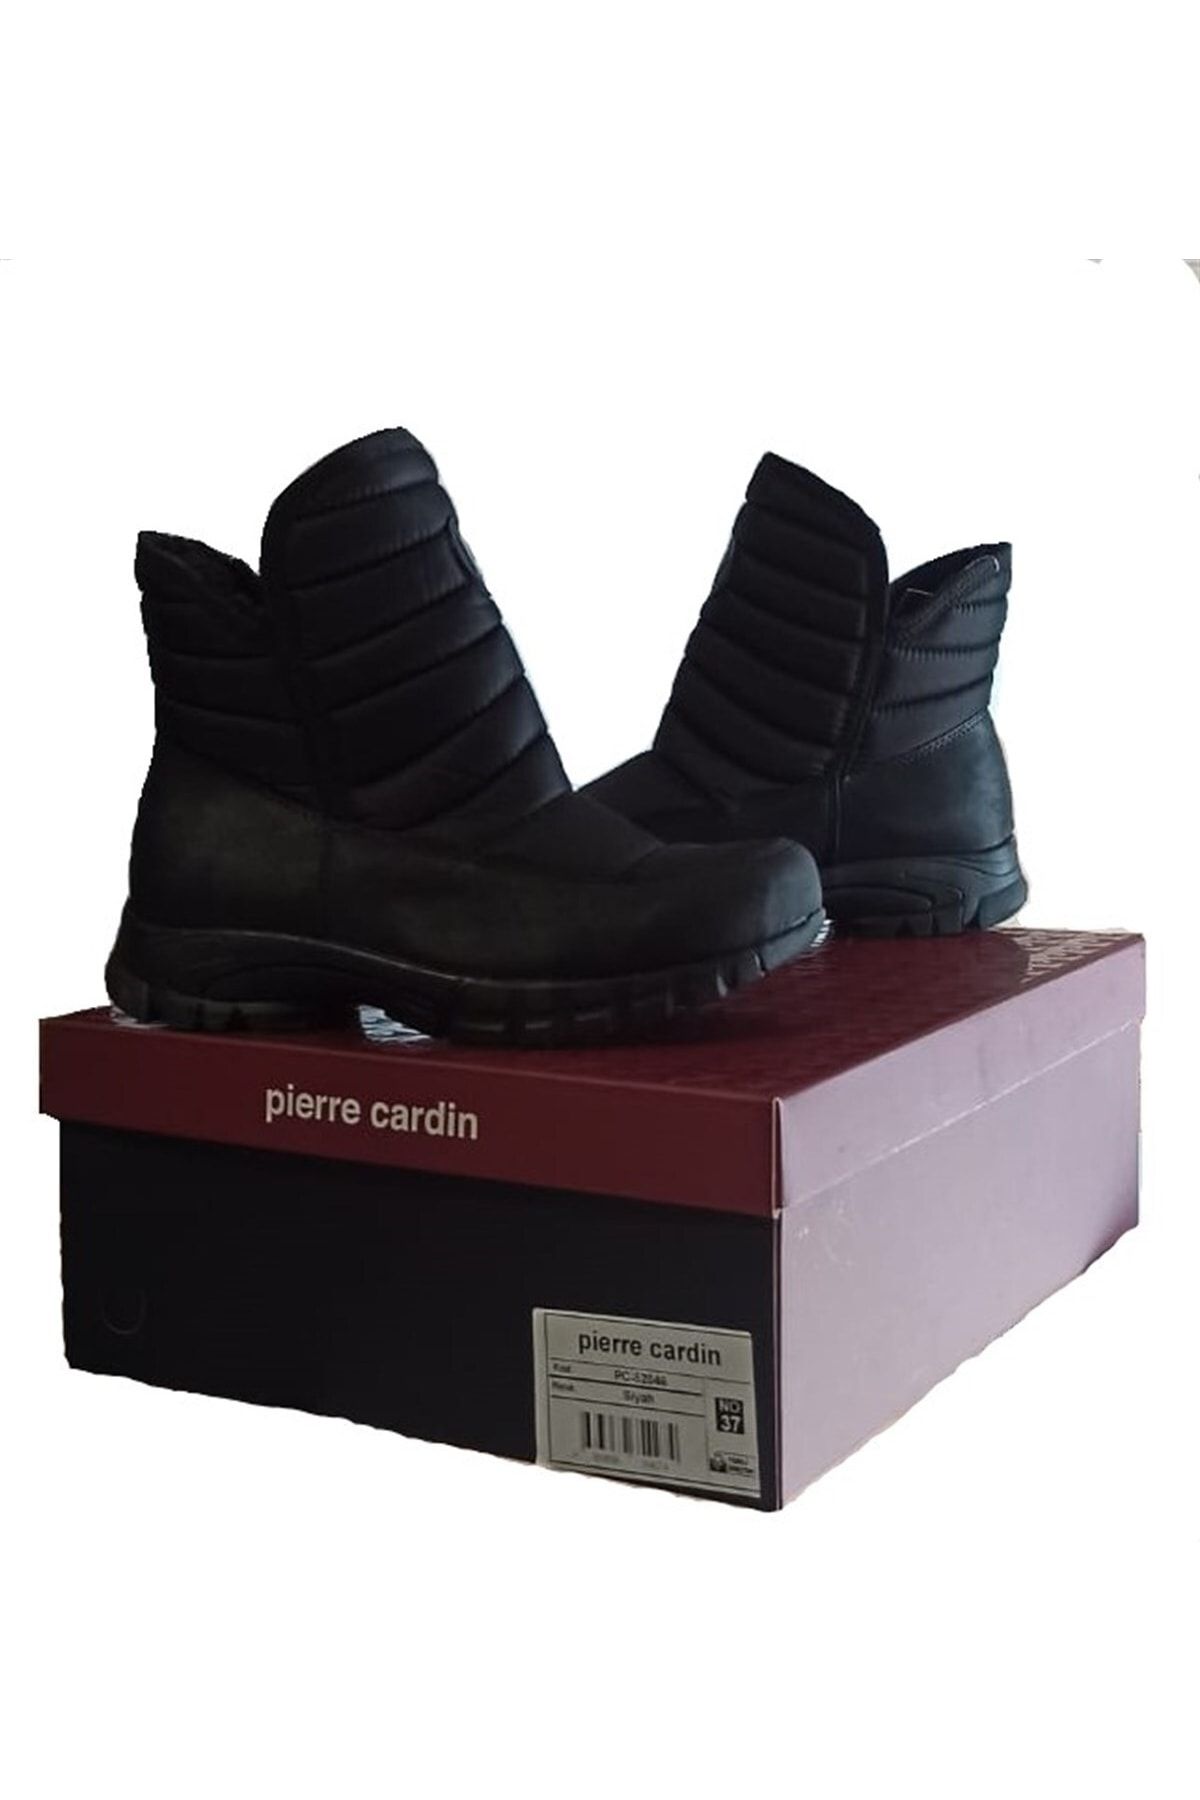 Pierre Cardin Anorak Içi Kürklü Günlük Yarım Bot Siyah Pc-52046 V2